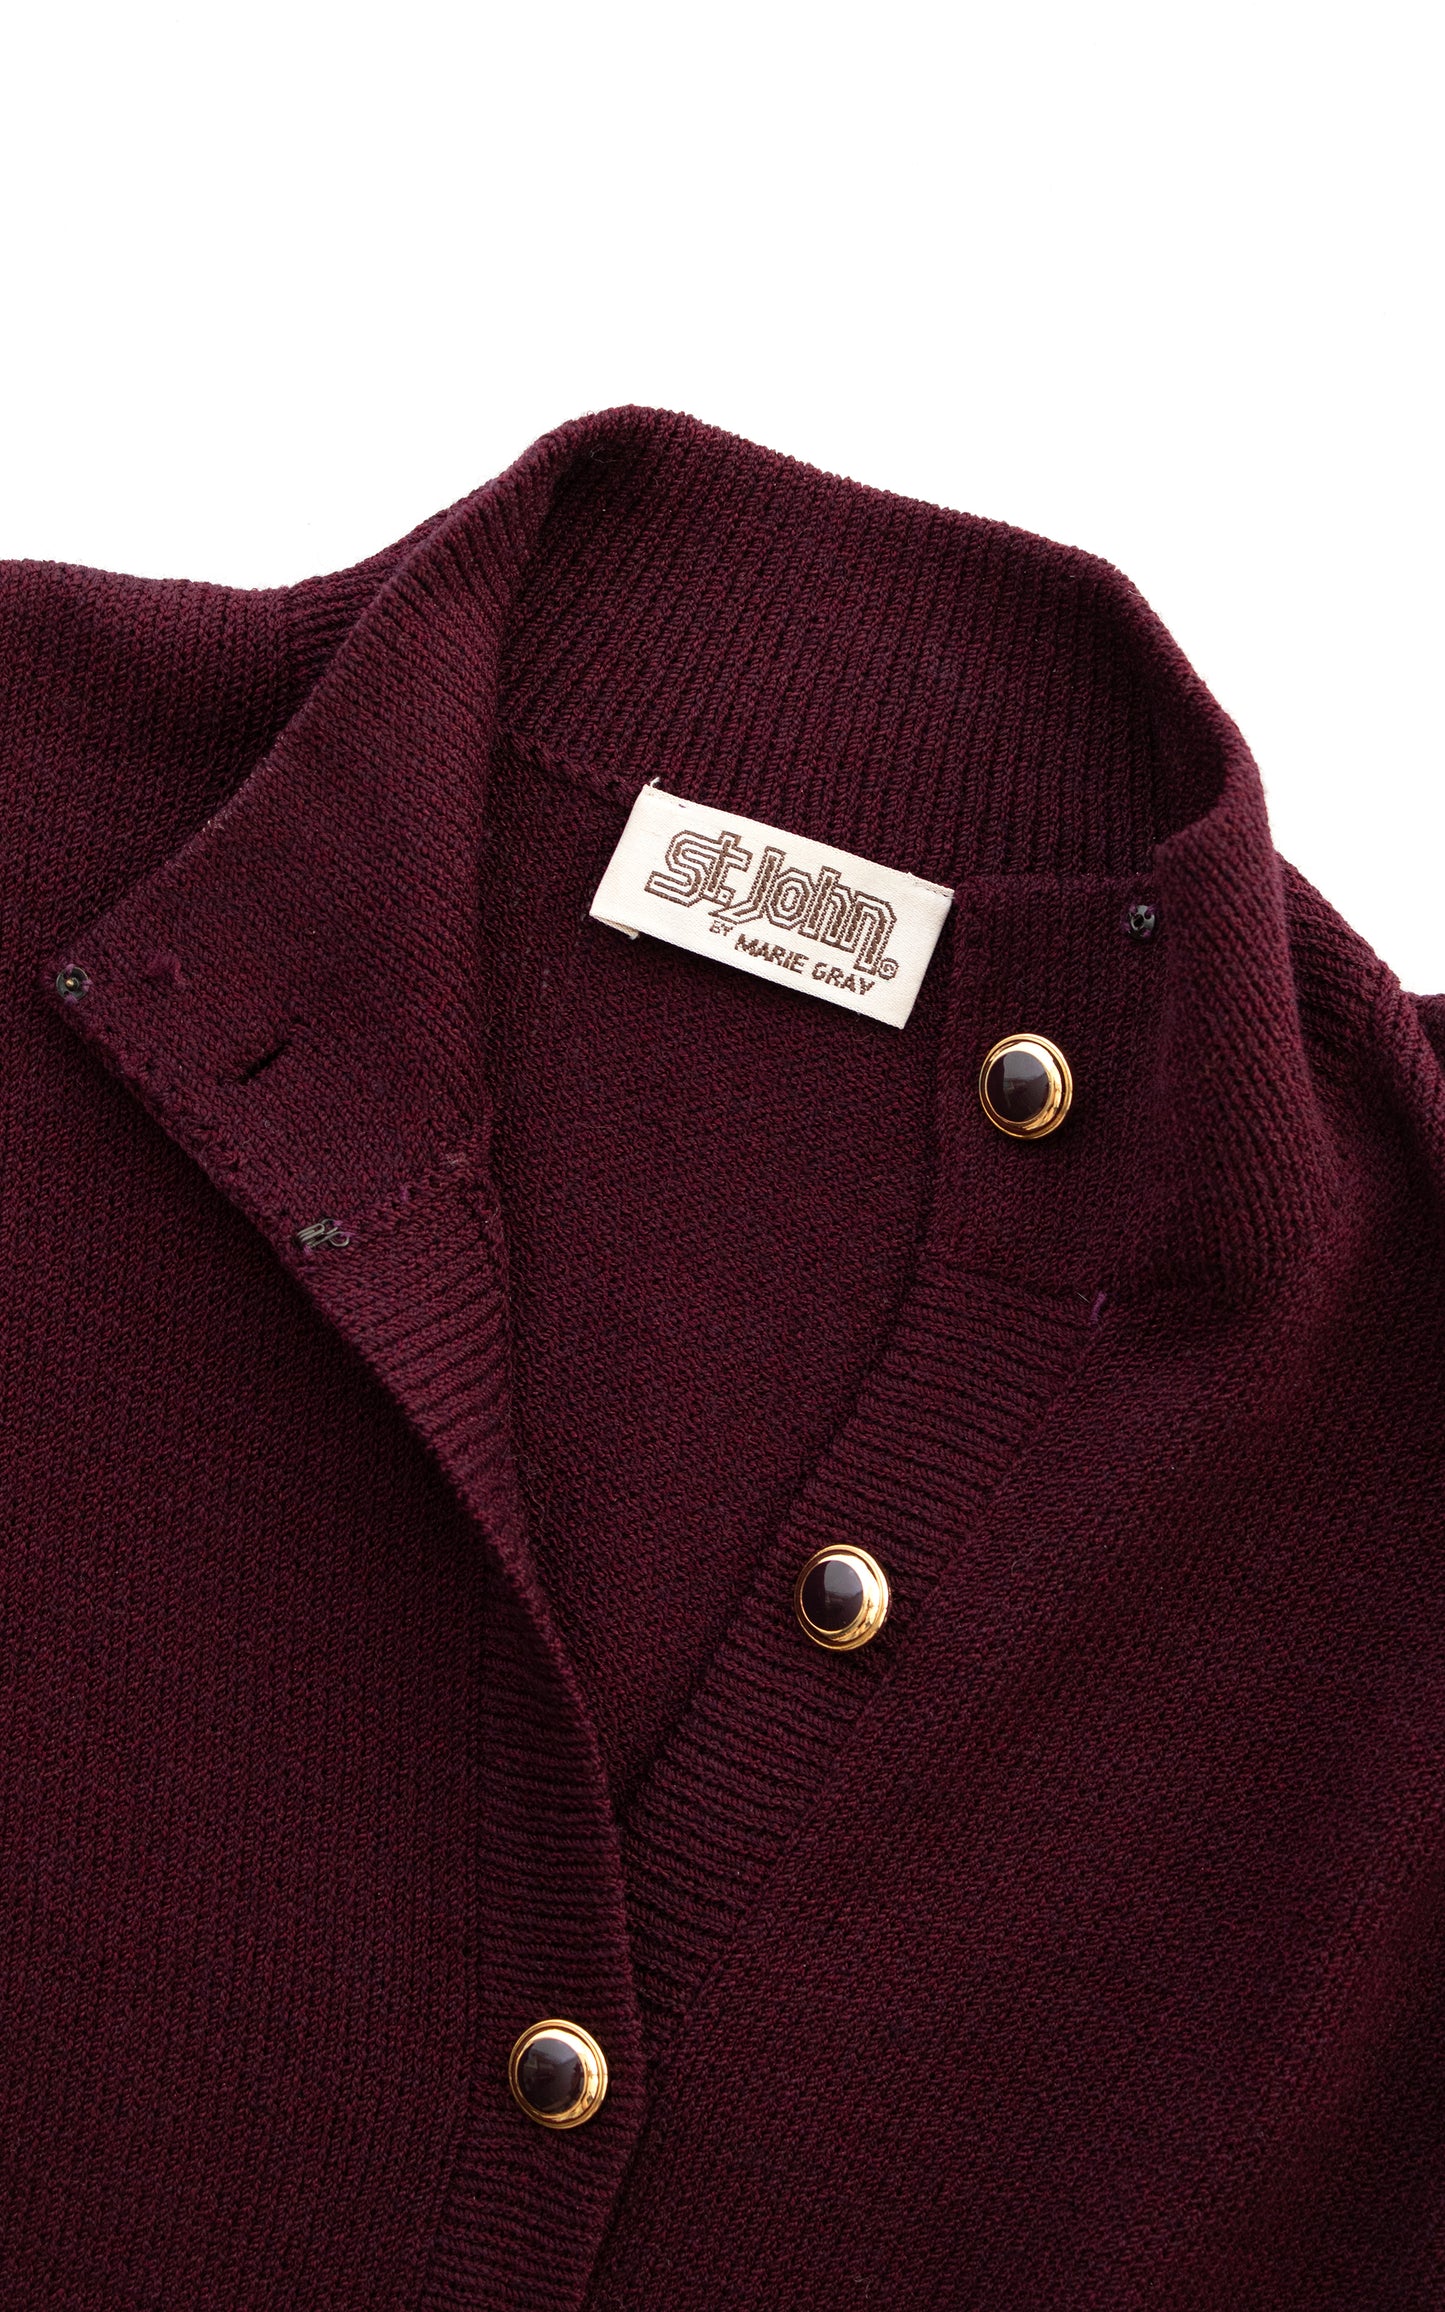 1970s 1980s ST JOHN KNITS Sweater Dress | small/medium